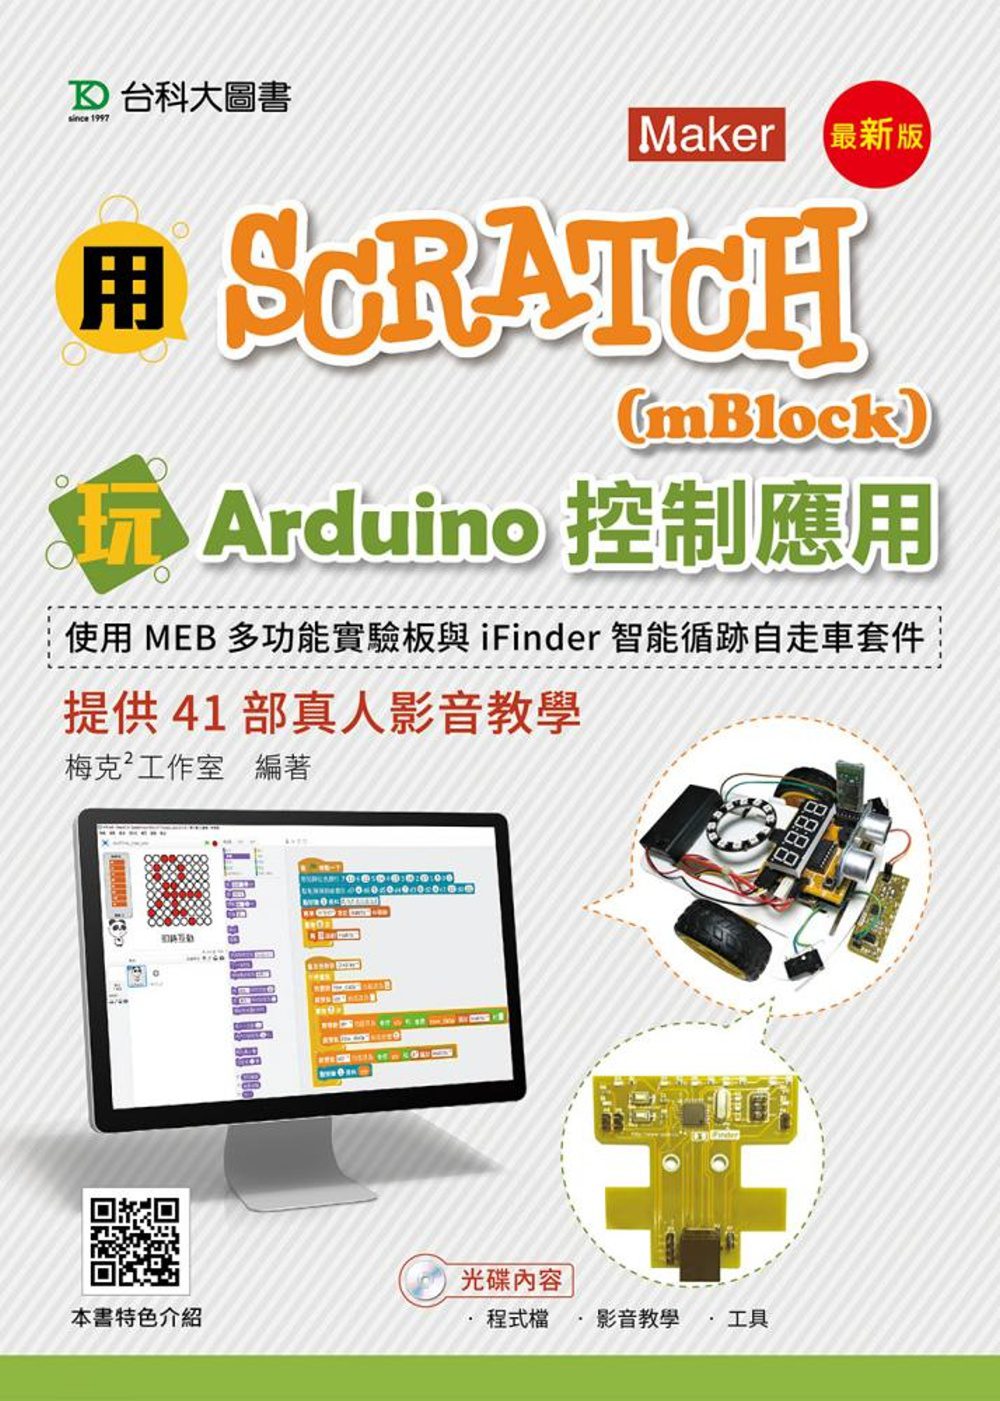 用Scratch(mBlock)玩Arduino控制應用-使用MEB多功能實驗板與iFinder智能循跡自走車套件提供41部真人影音教學